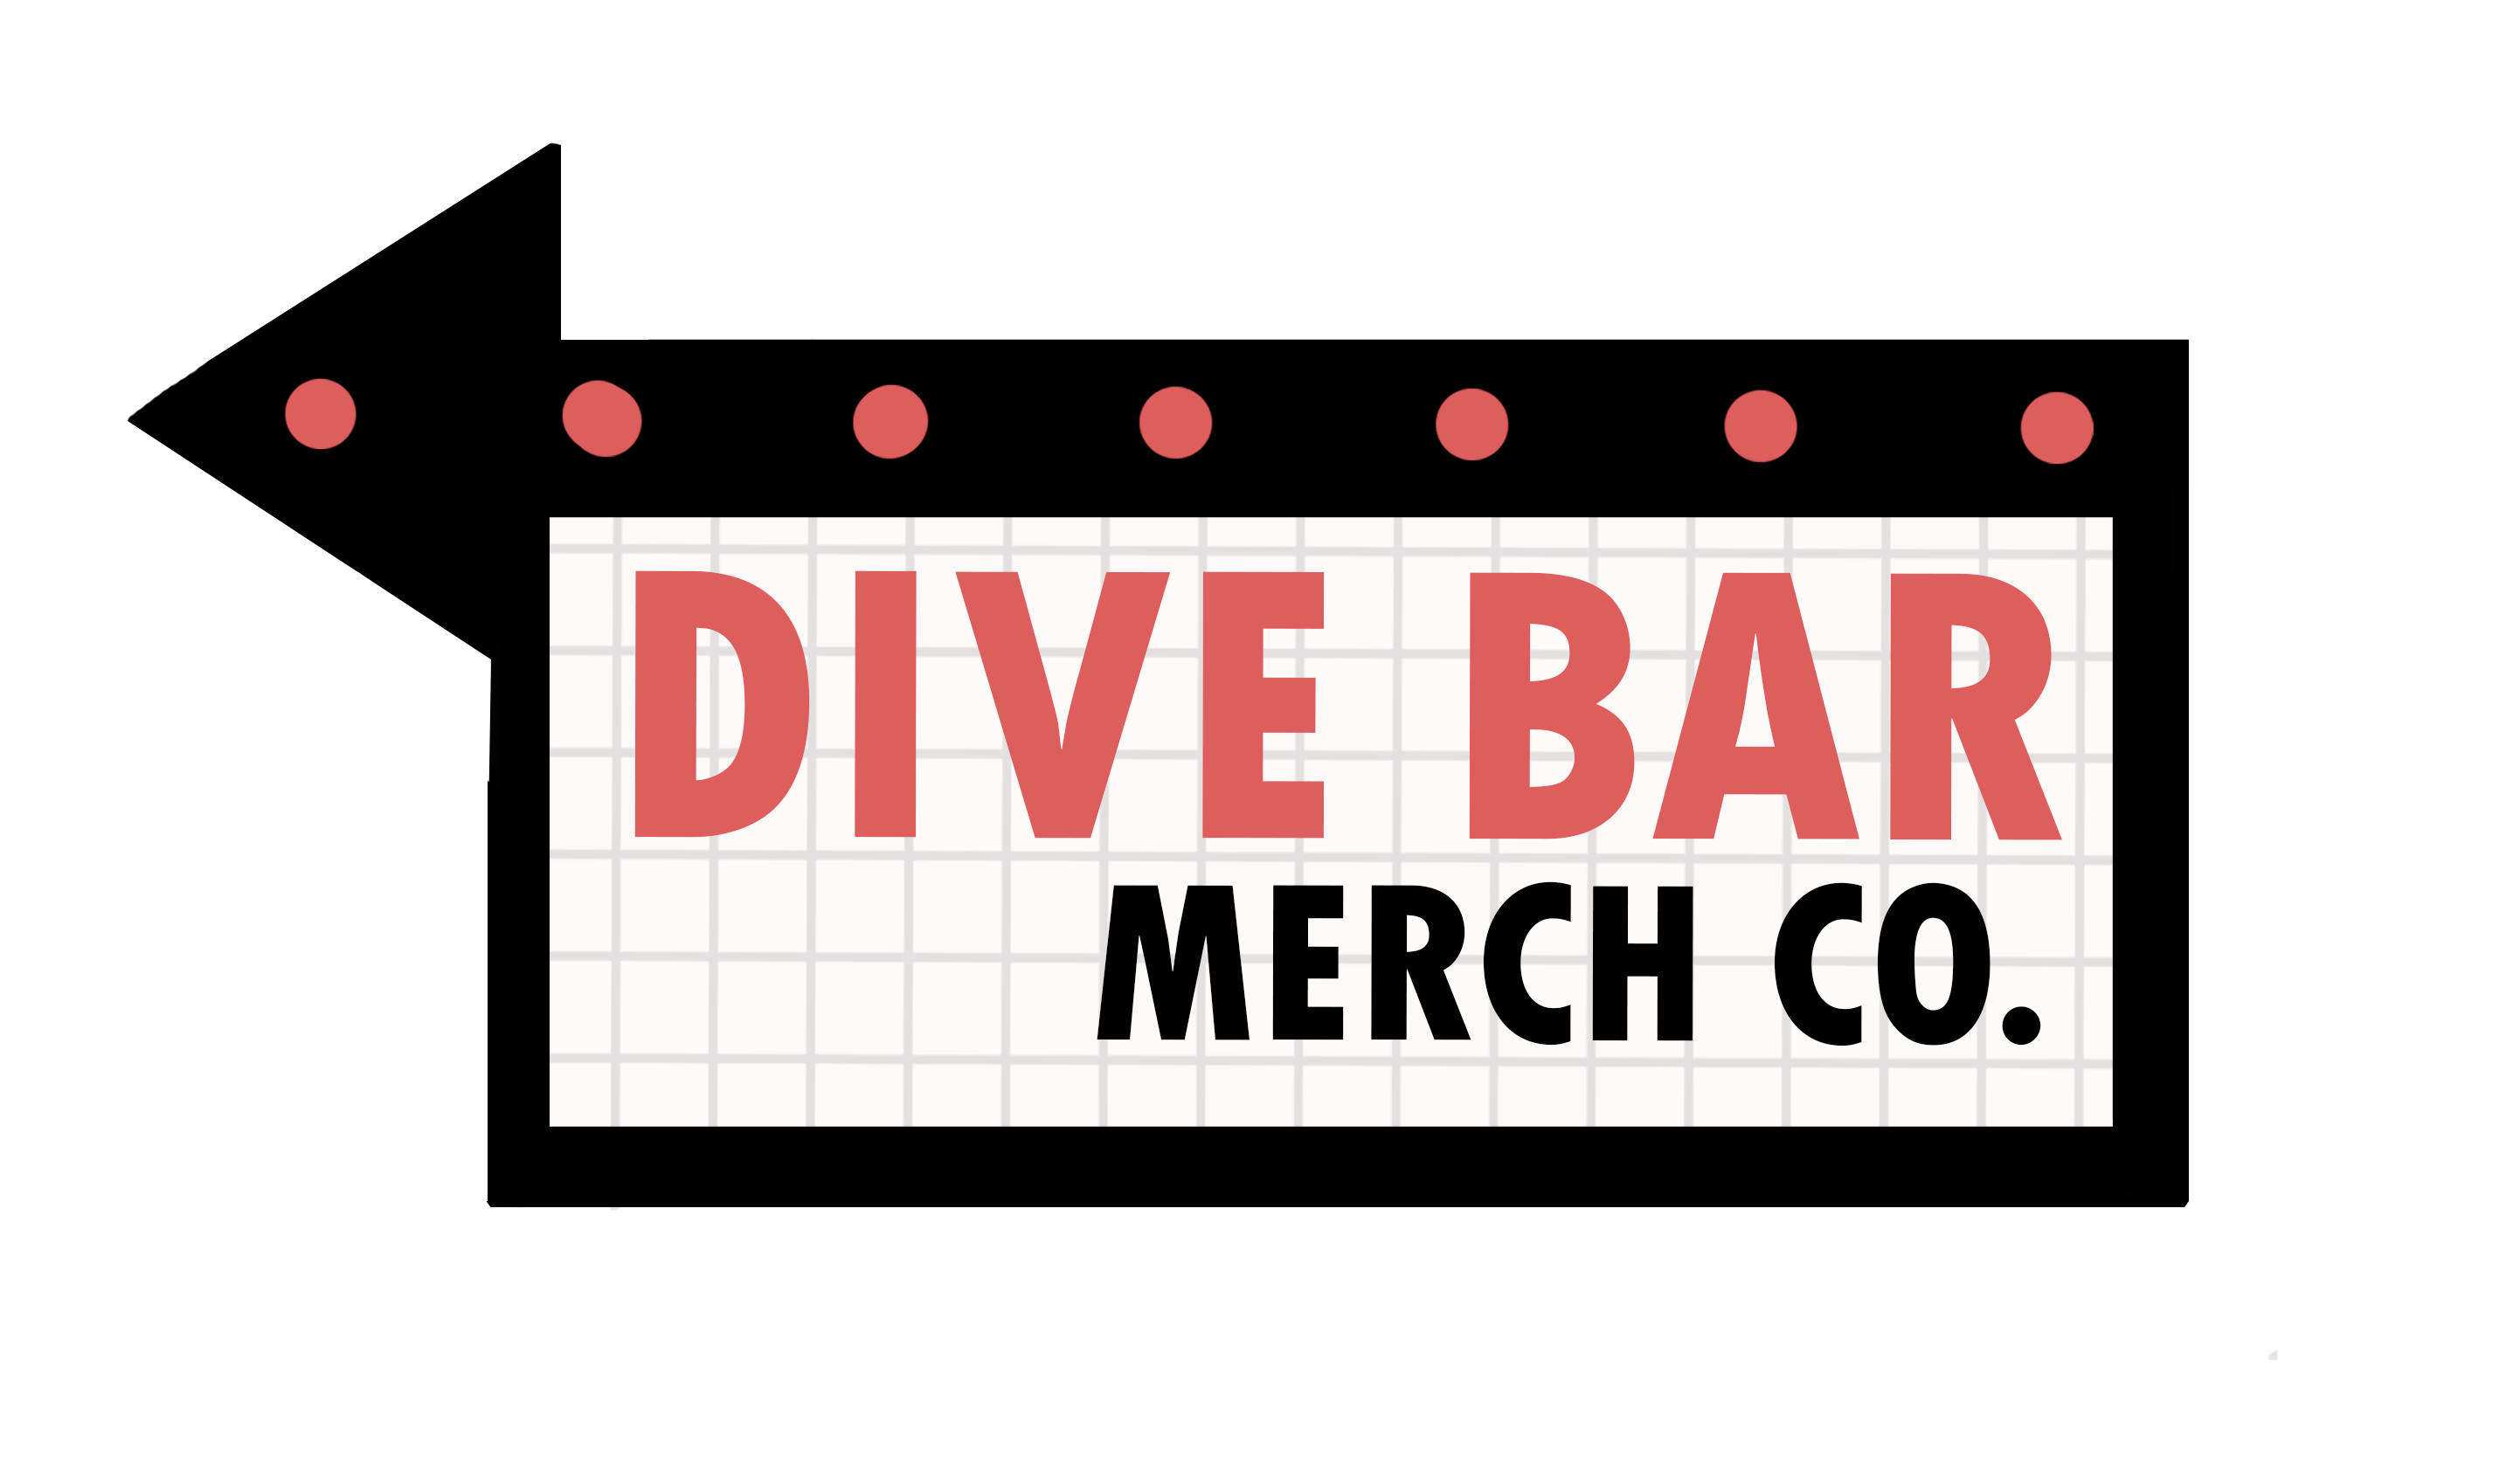 Dive Bar Merch Co.